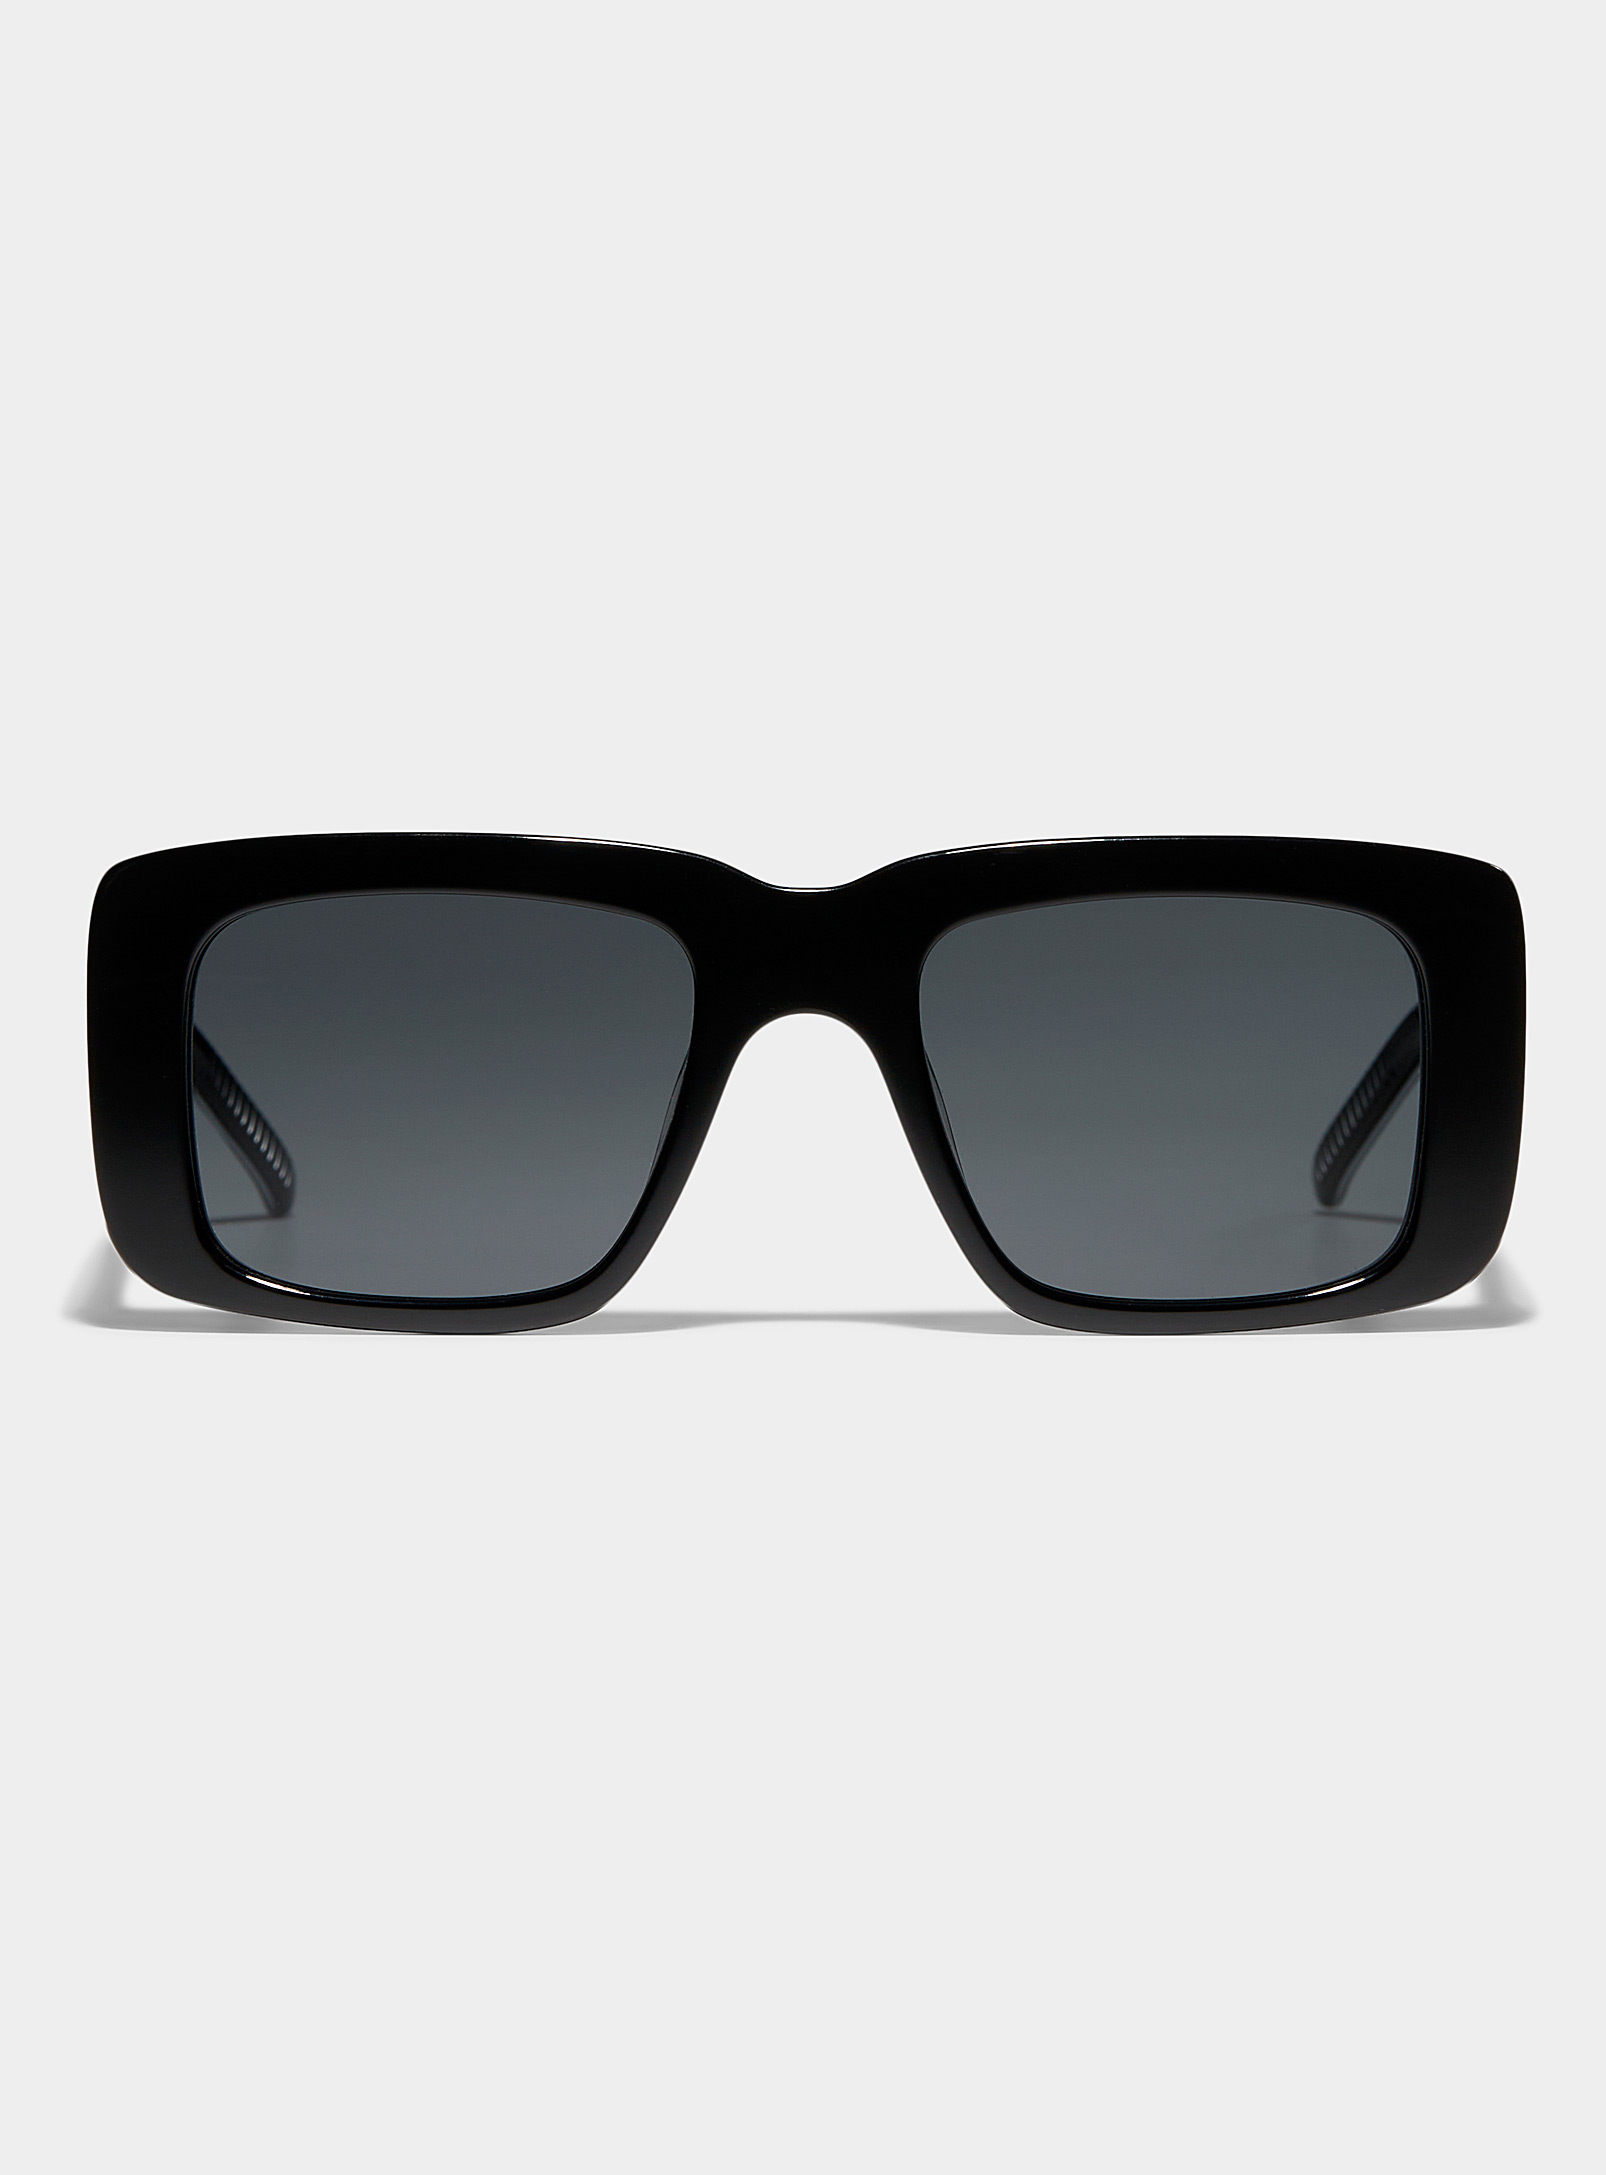 Spitfire - Women's Cut Seventy rectangular sunglasses